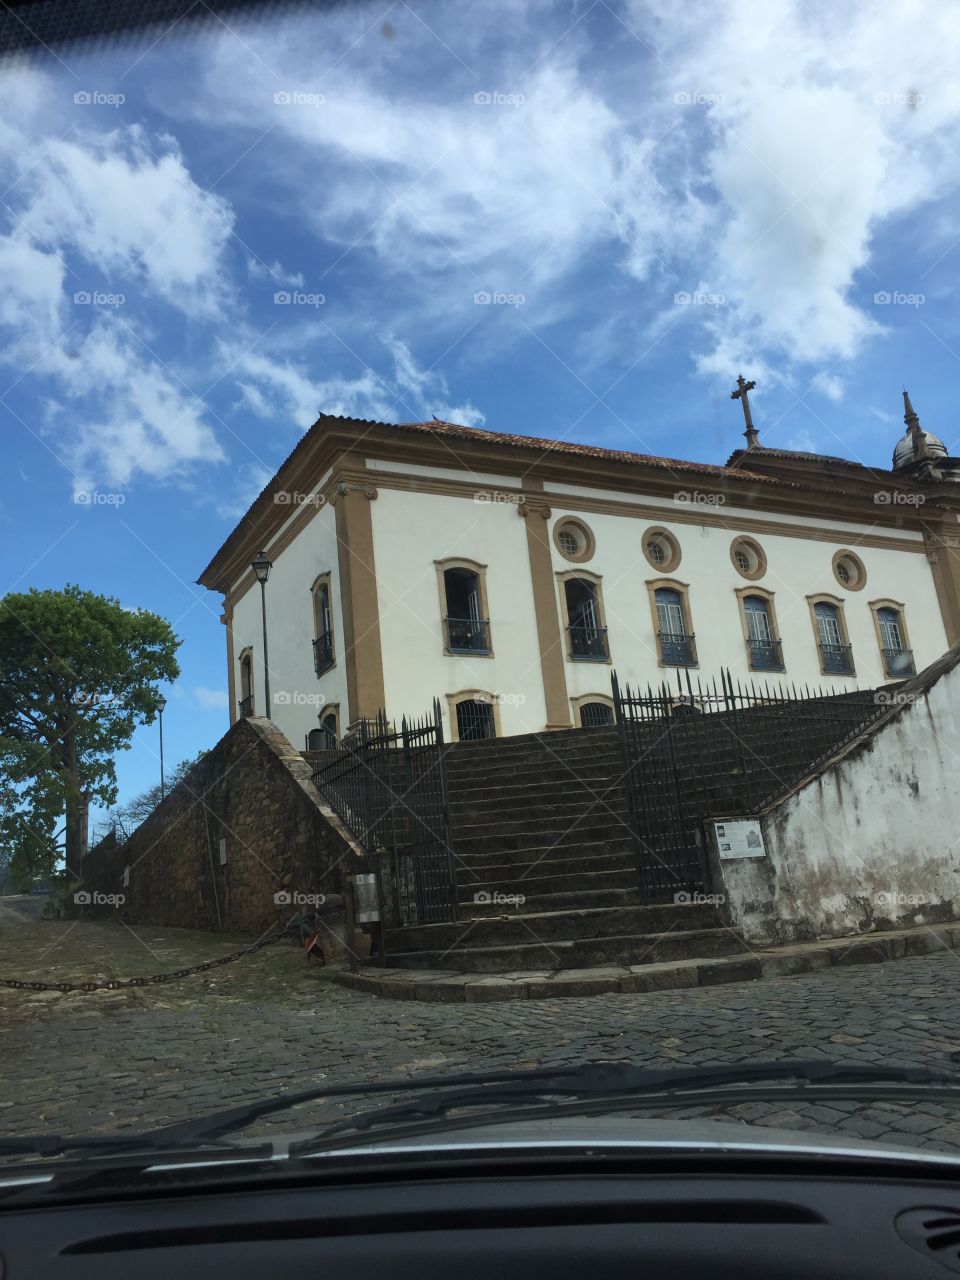 Nossa senhora do Carmo, churc Ouro Preto, Brasil 